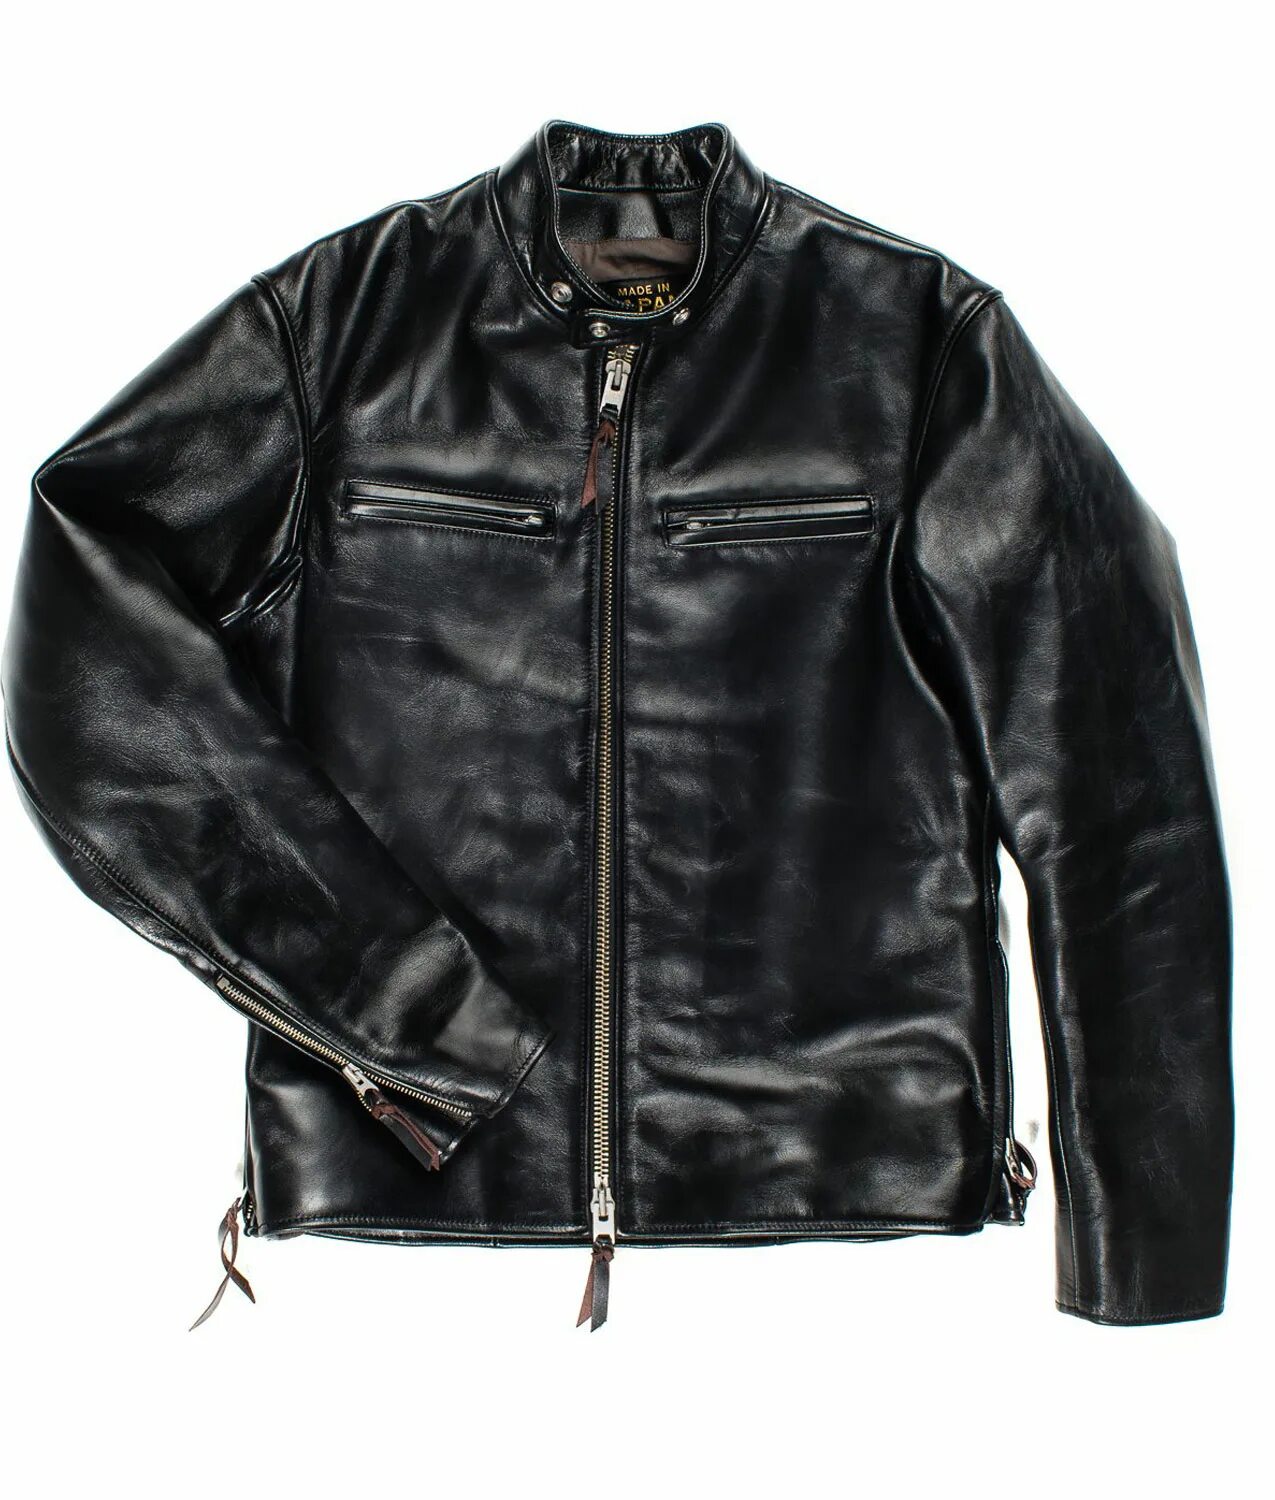 Iron Jacket. Измятая куртка. Iron Heart IHJ-124 Black. Как гладить кожаную куртку. Как отгладить кожаную куртку в домашних условиях